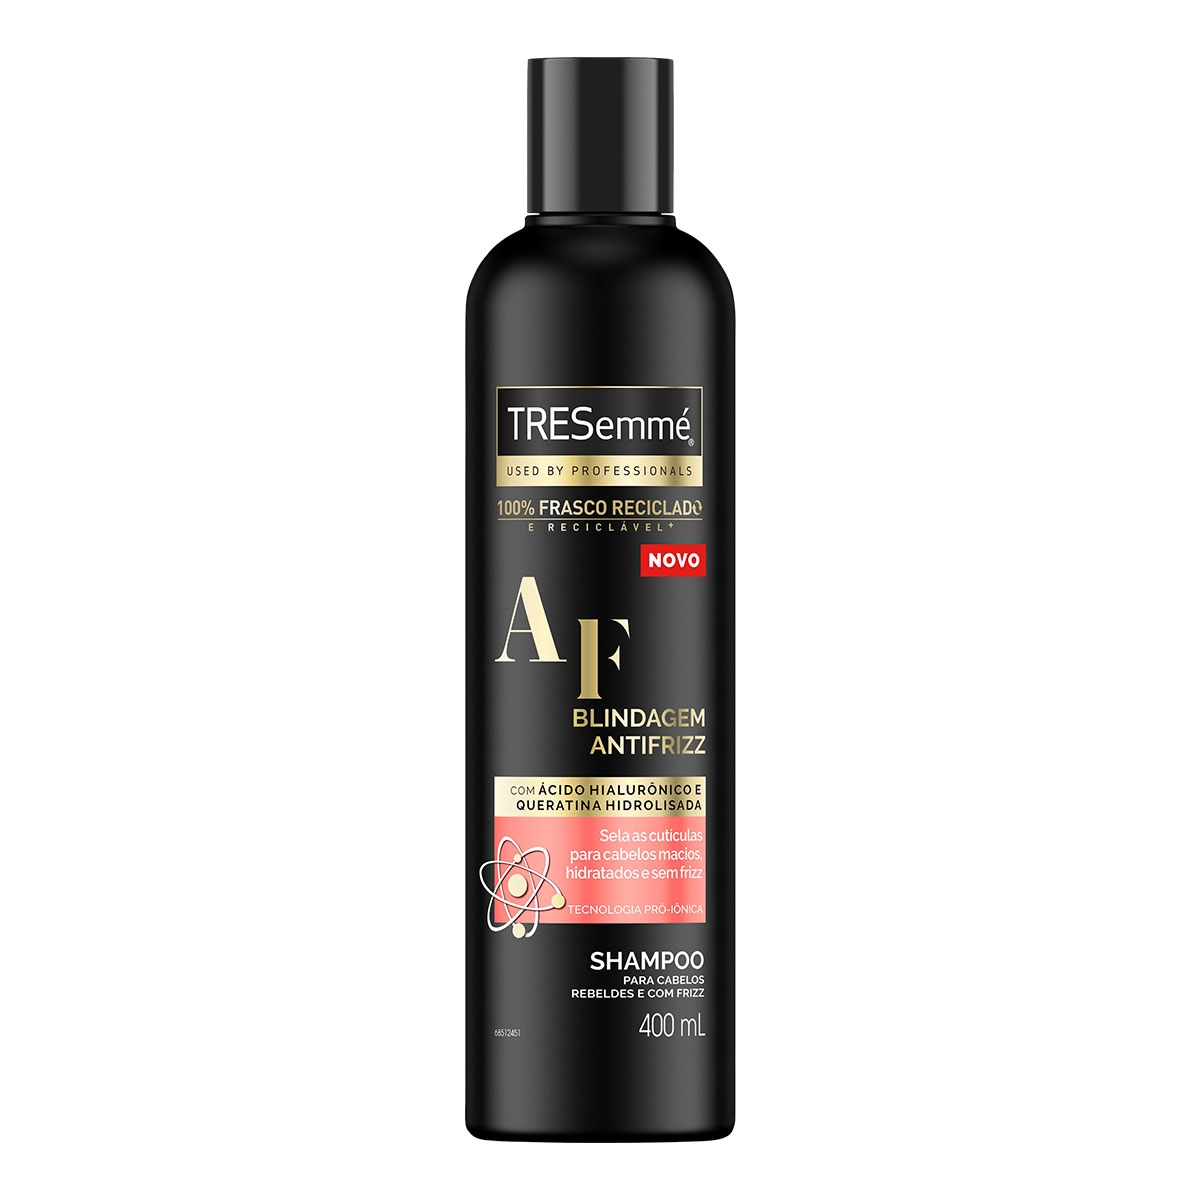 Shampoo TRESemmé Blindagem Antifrizz com Ácido Hialurônico e Queratina Hidrolisada com 400ml